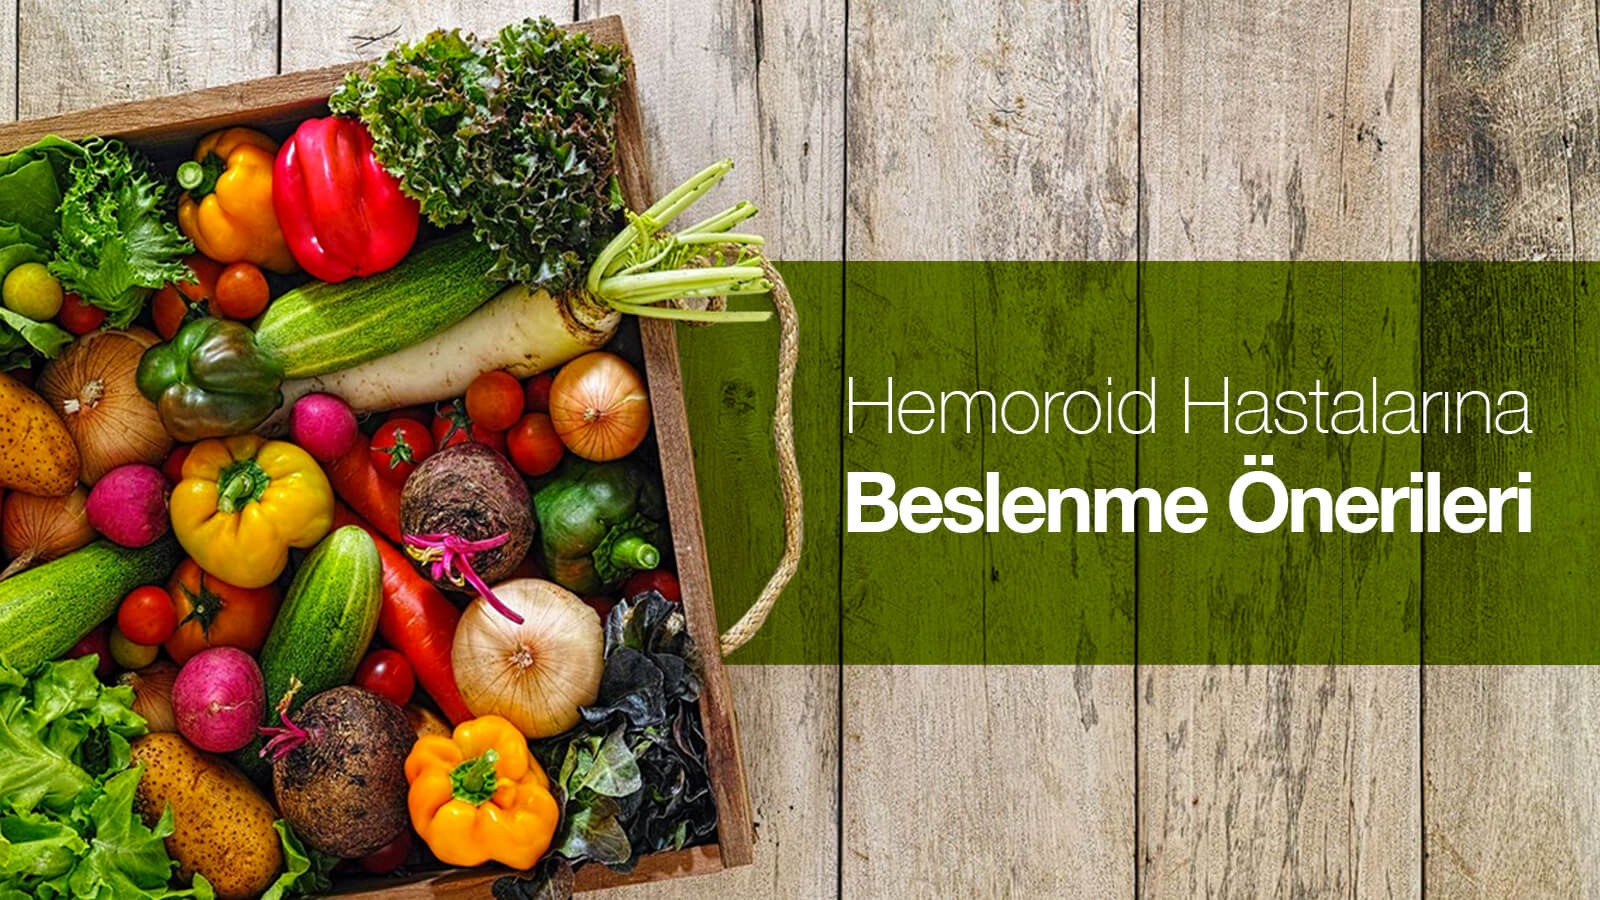 Hemoroid Hastalarına Beslenme Önerileri